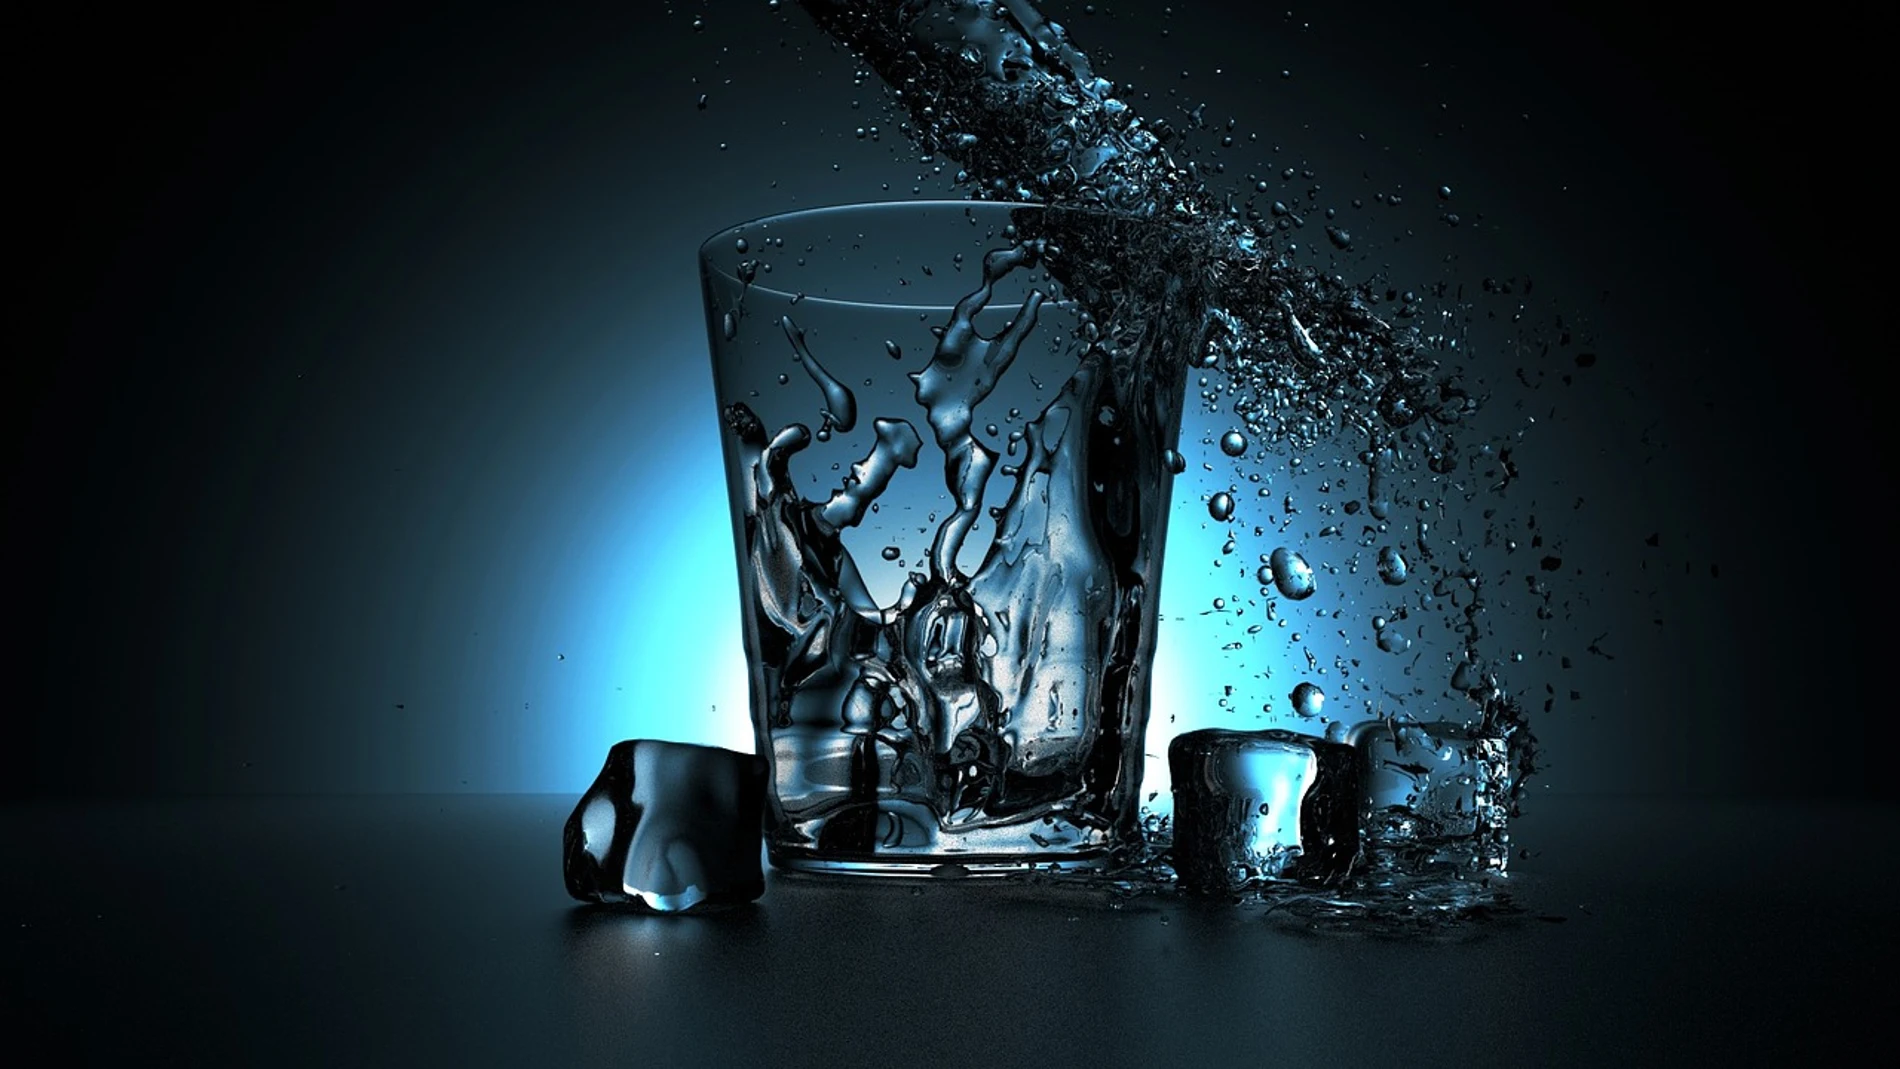 El agua fluctúa entre dos estados líquidos a -44 grados